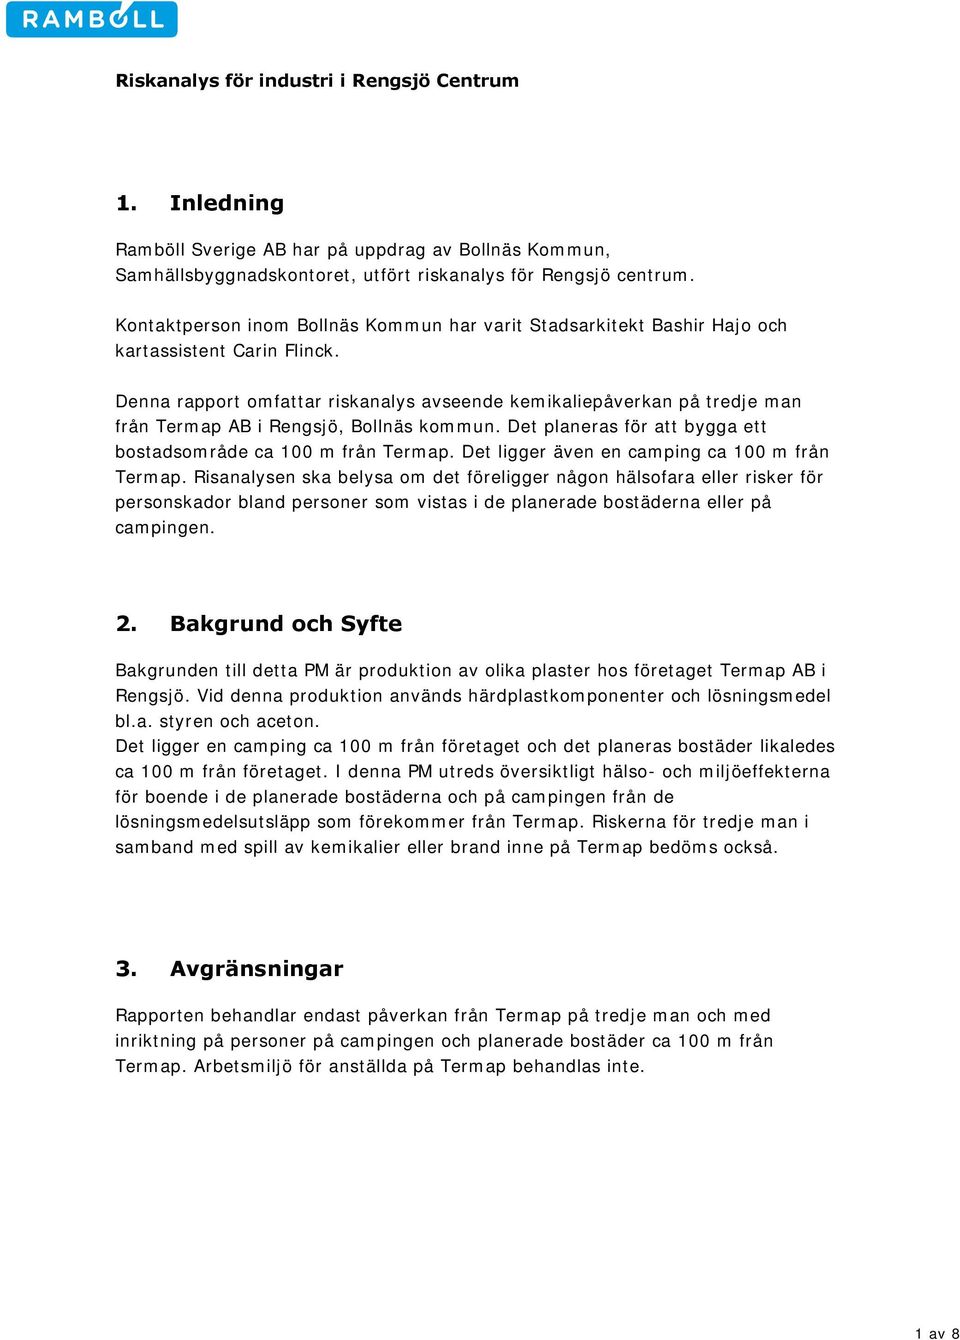 Denna rapport omfattar riskanalys avseende kemikaliepåverkan på tredje man från Termap AB i Rengsjö, Bollnäs kommun. Det planeras för att bygga ett bostadsområde ca 100 m från Termap.